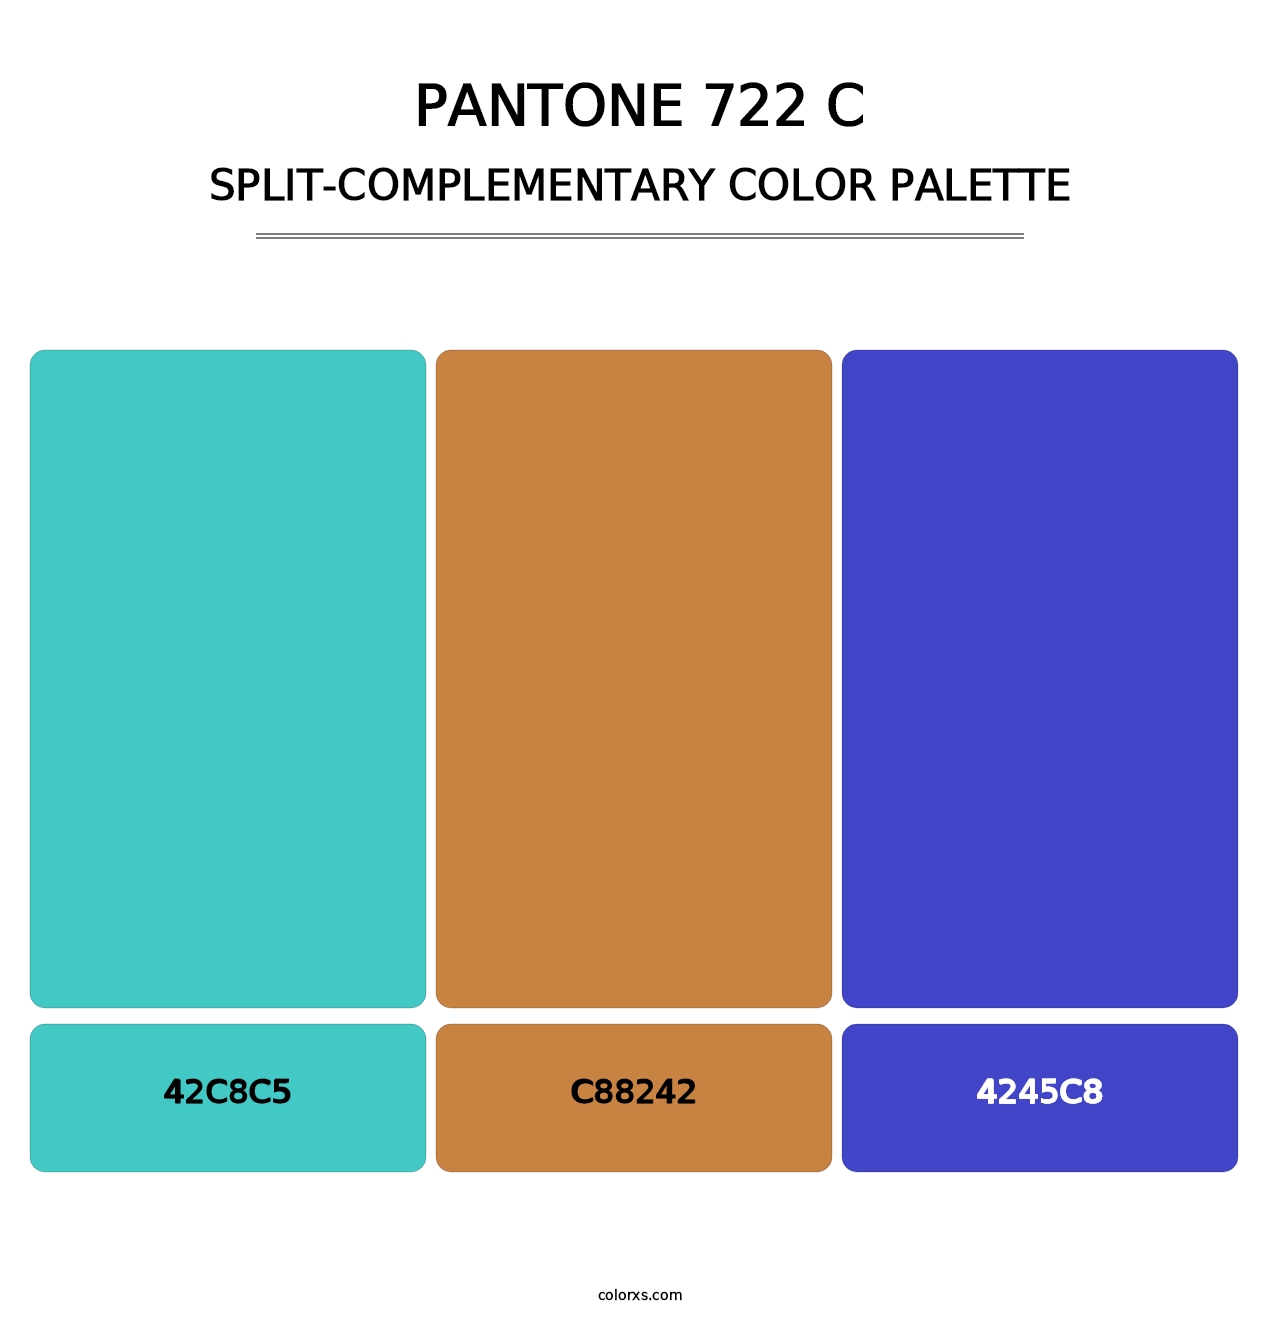 PANTONE 722 C - Split-Complementary Color Palette